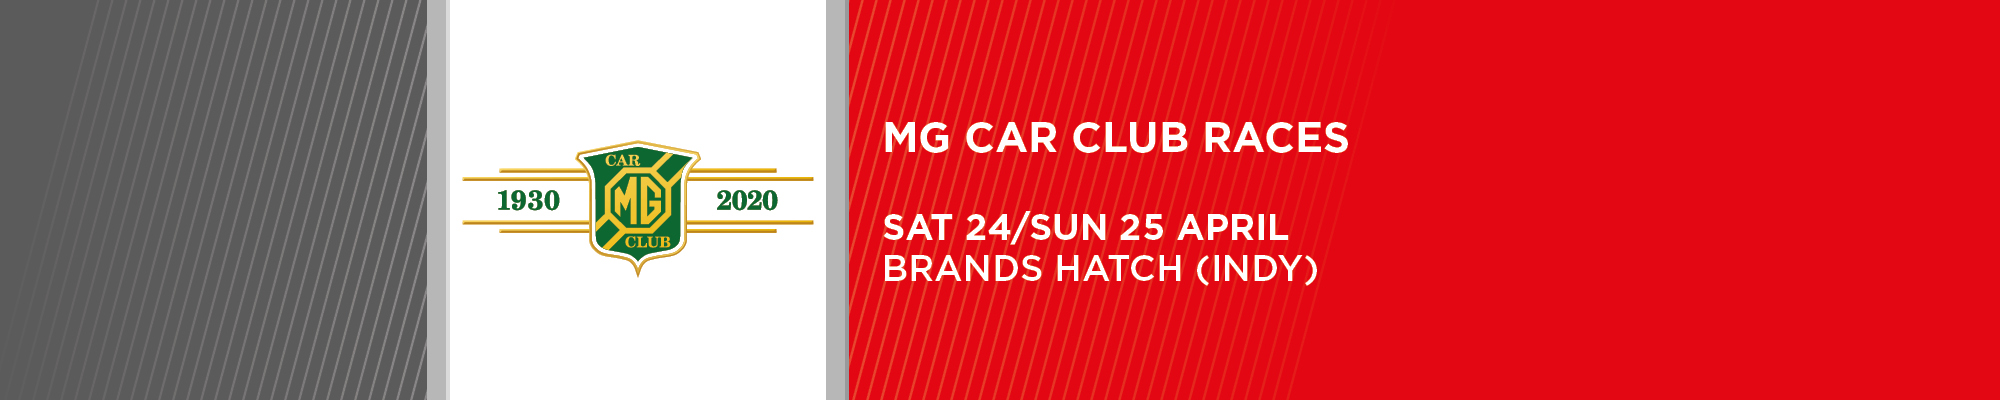 MG Car Club - NO SPECTATORS